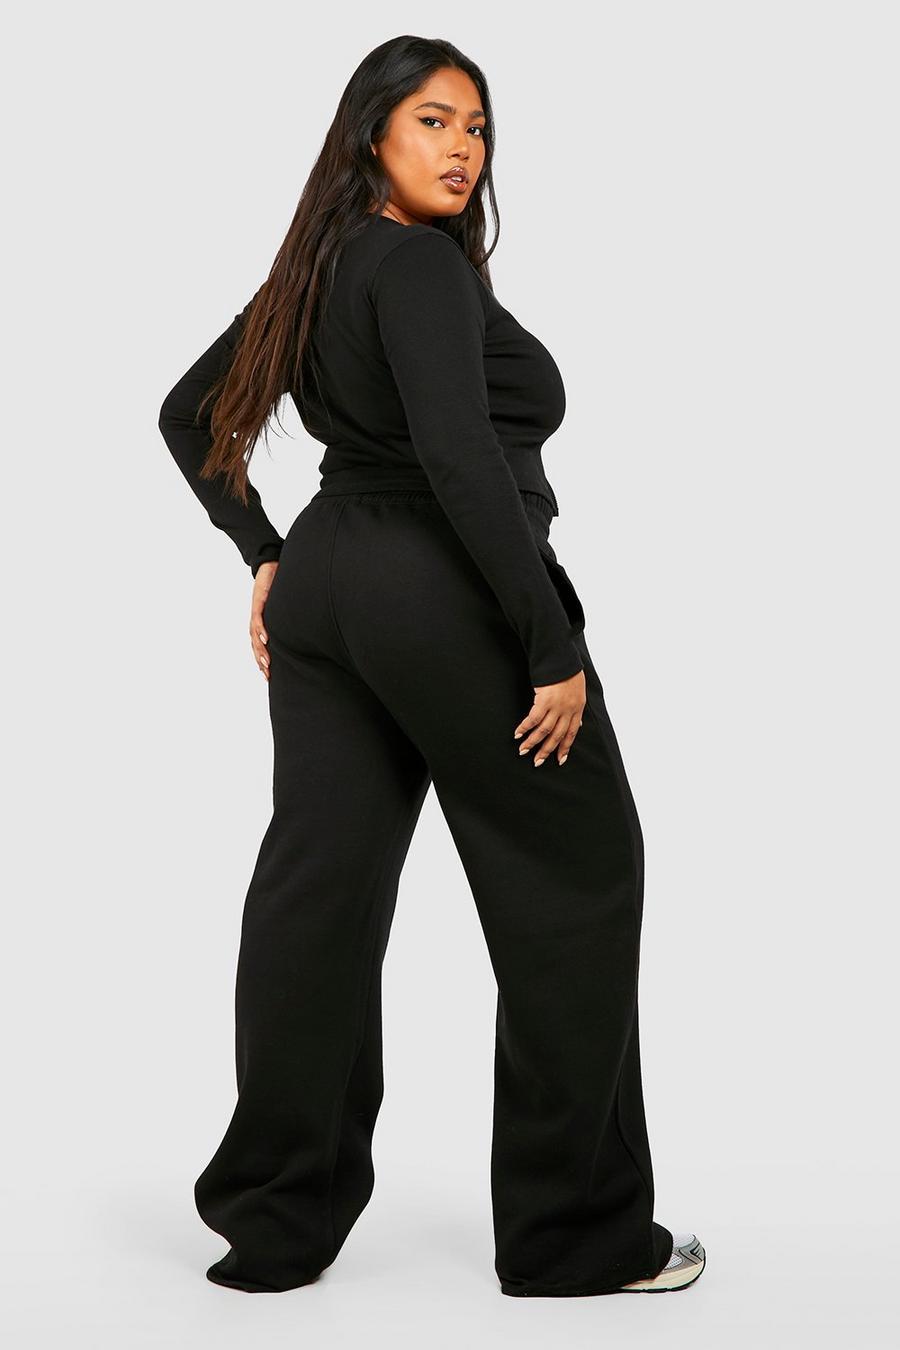 czarny komplet spodnie dresowe bluzka prążki zamek